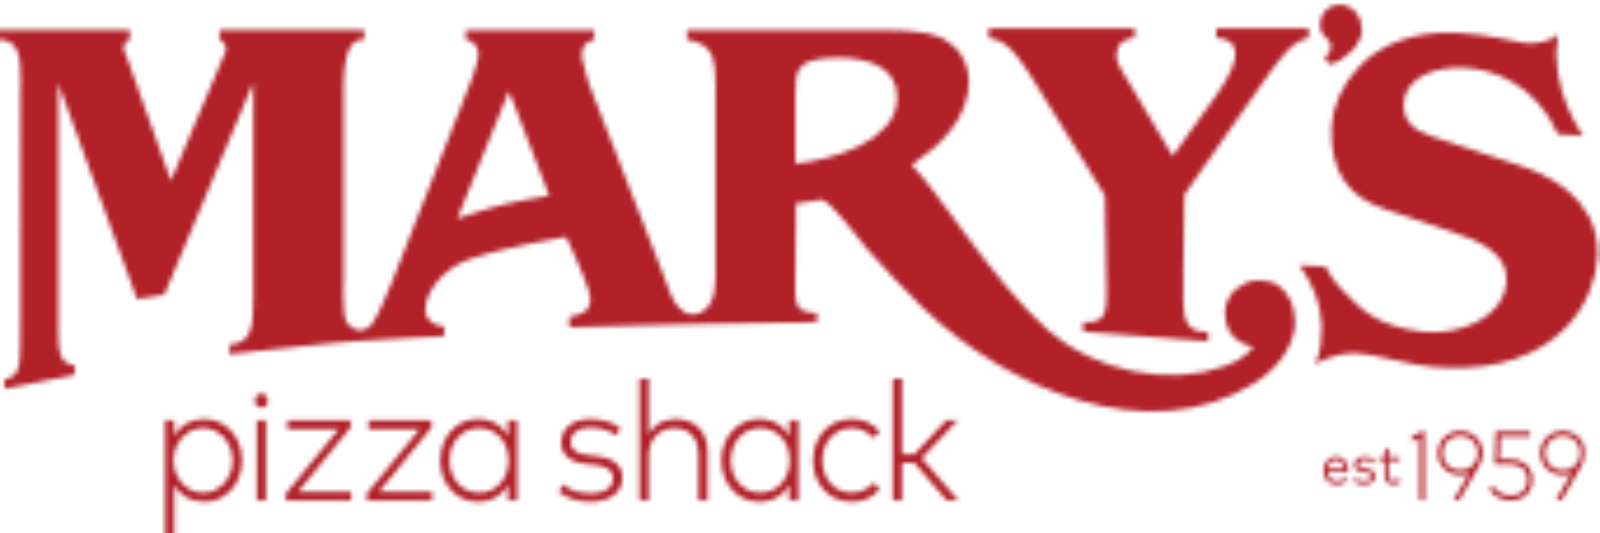 Mary's Pizza Shack Logo